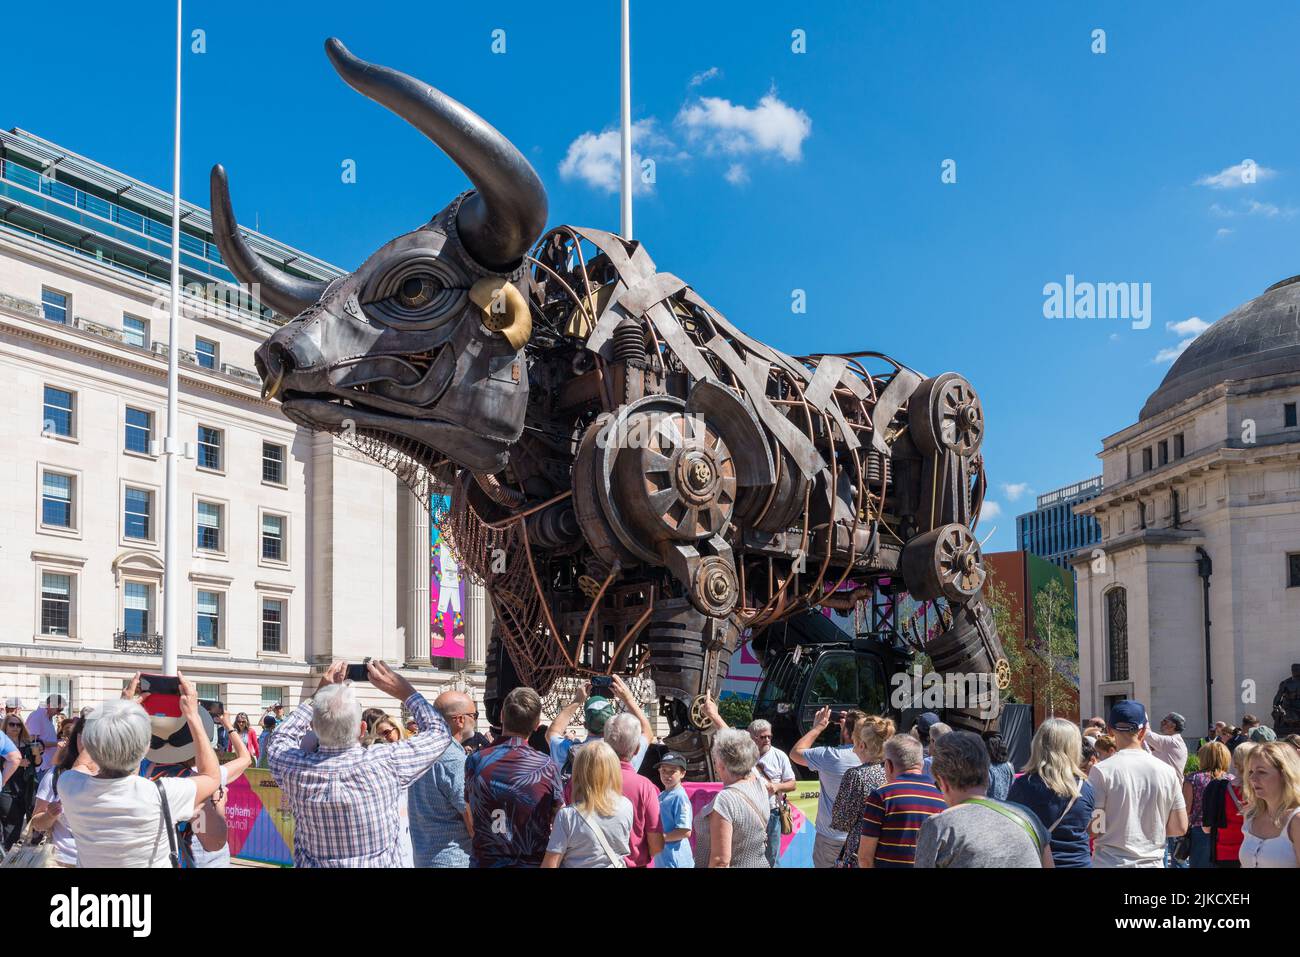 Folle di visitatori a Birmingham per i Giochi del Commonwealth 2022 che hanno visto il toro che ha caratterizzato nella cerimonia di apertura Foto Stock